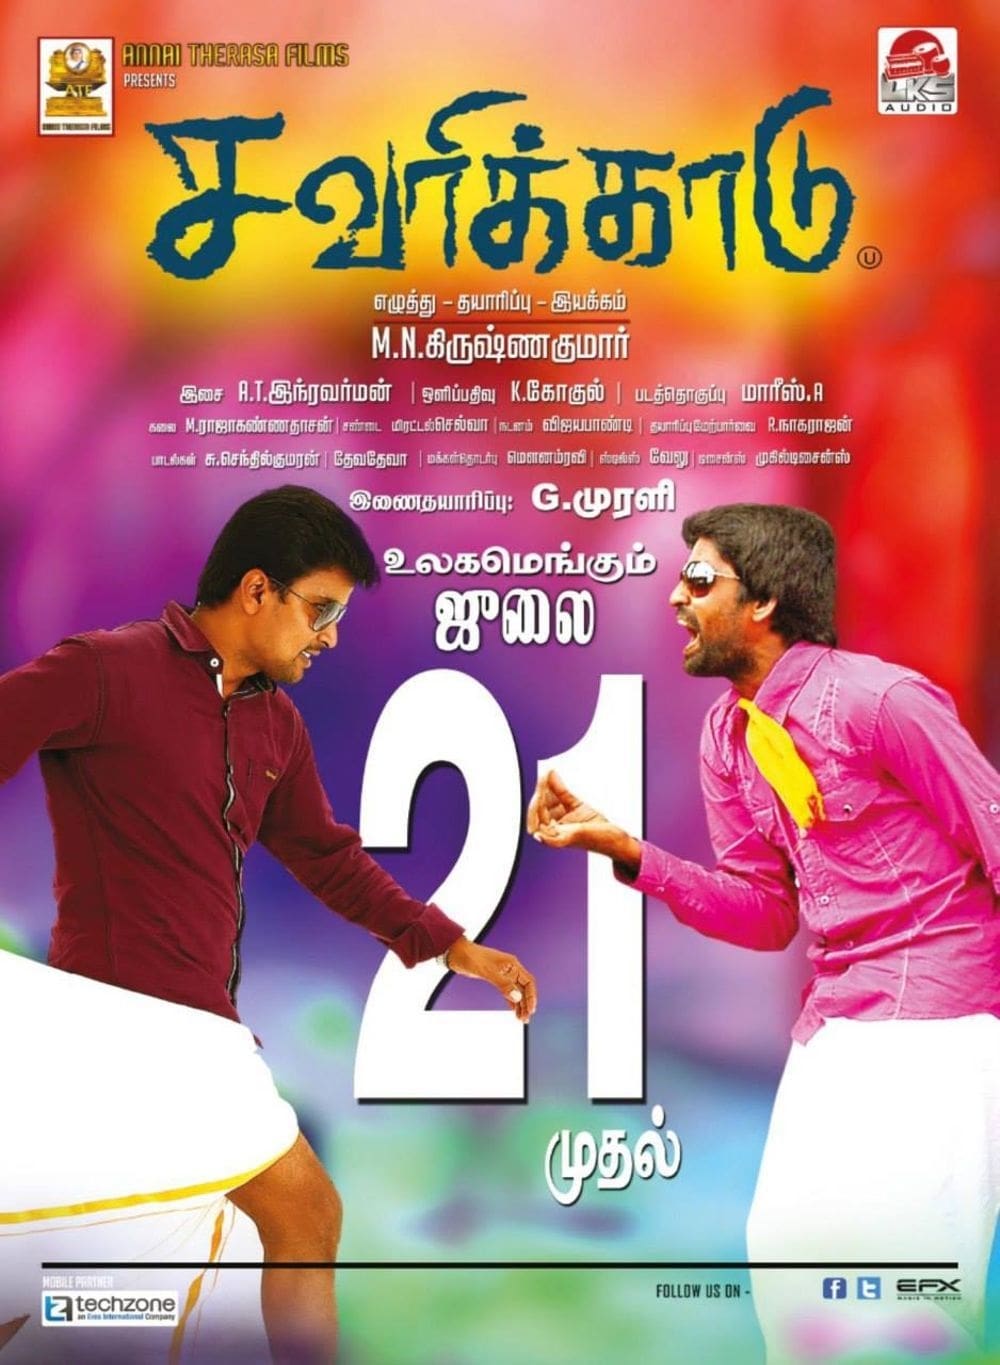 Poster for the movie "Savarikkadu"